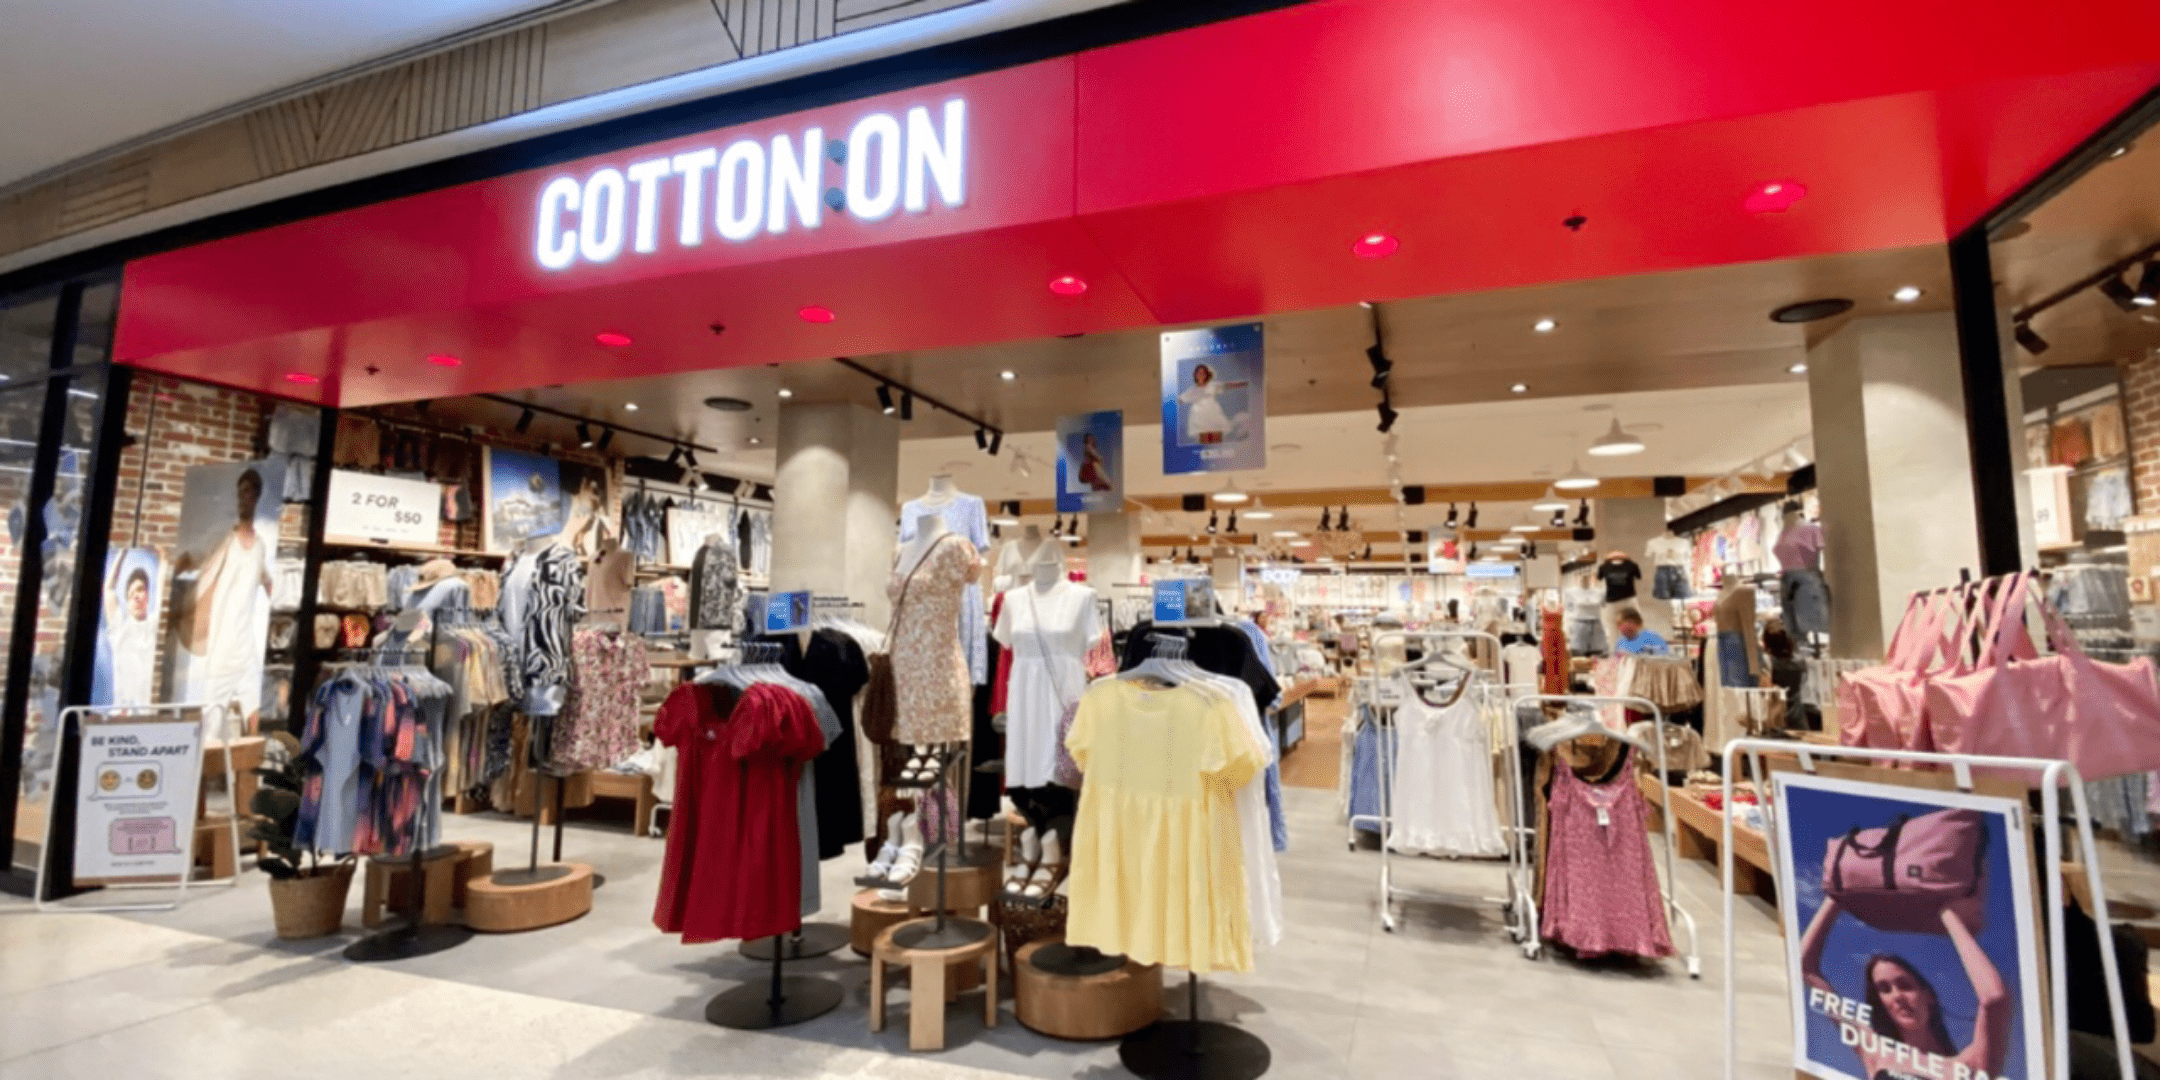 Cottonon